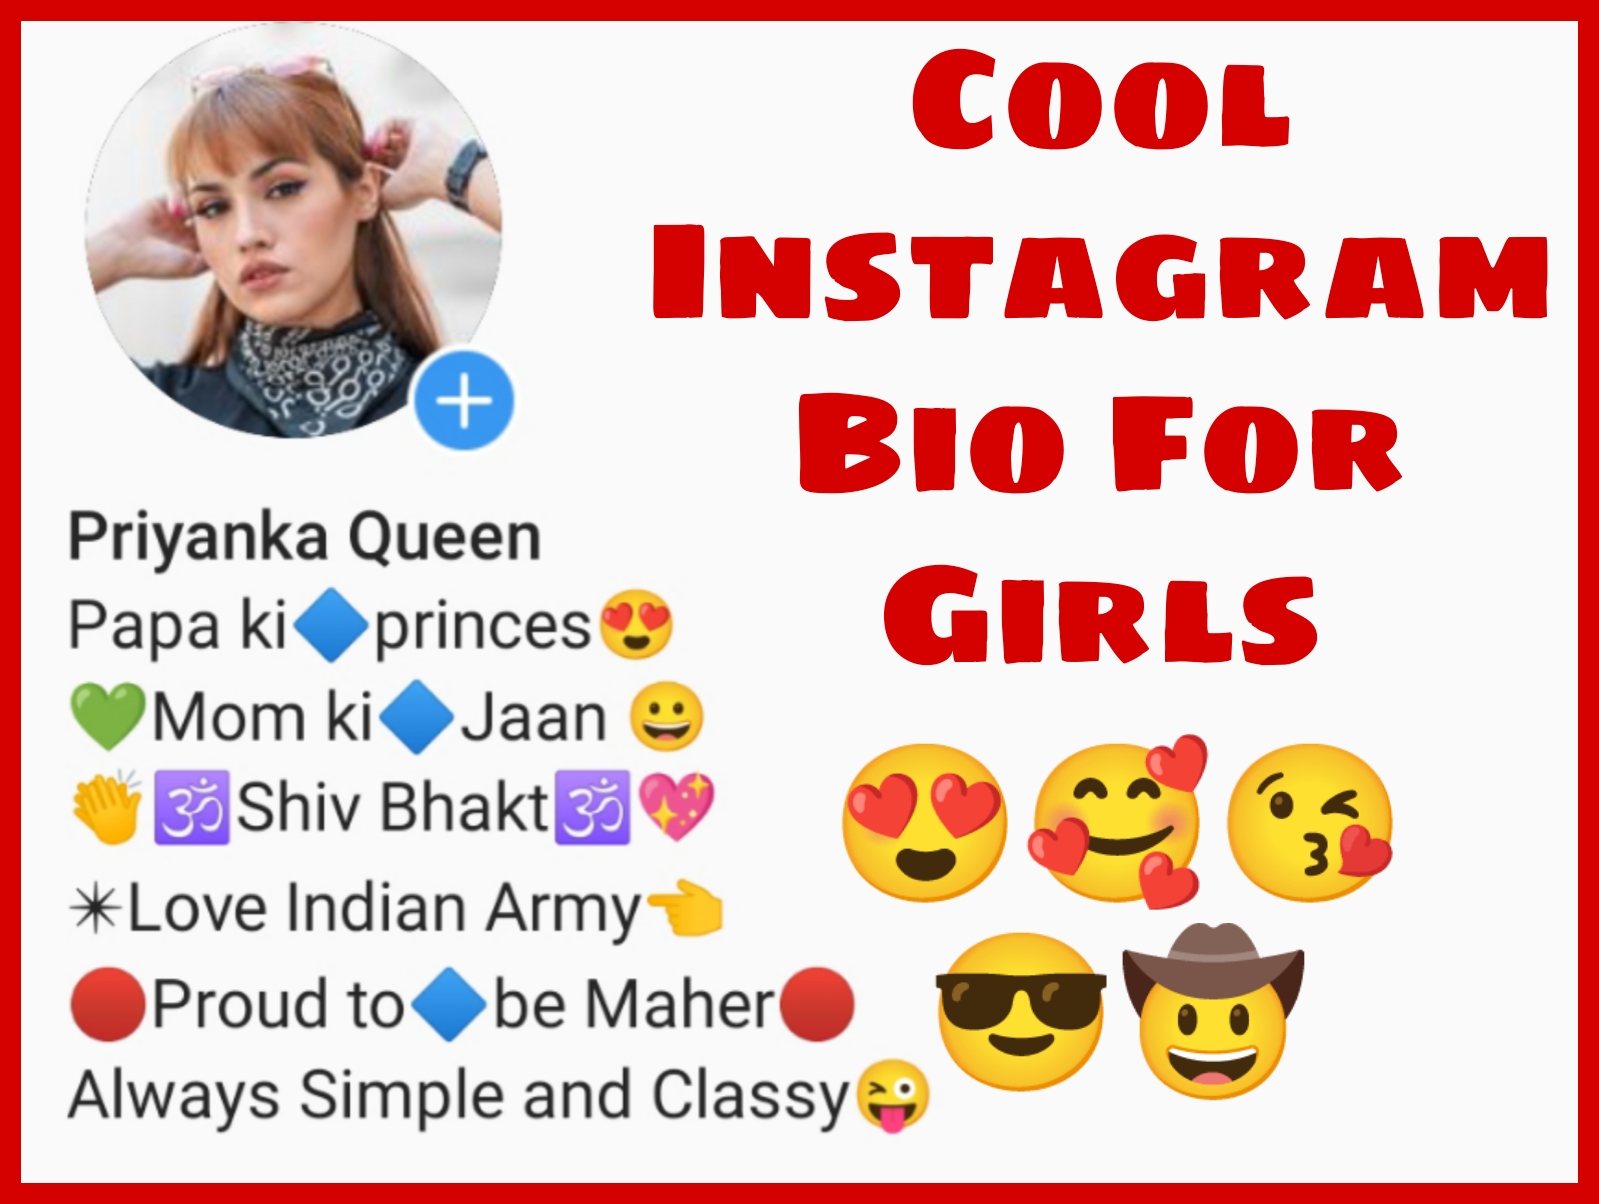 biography for girl on instagram